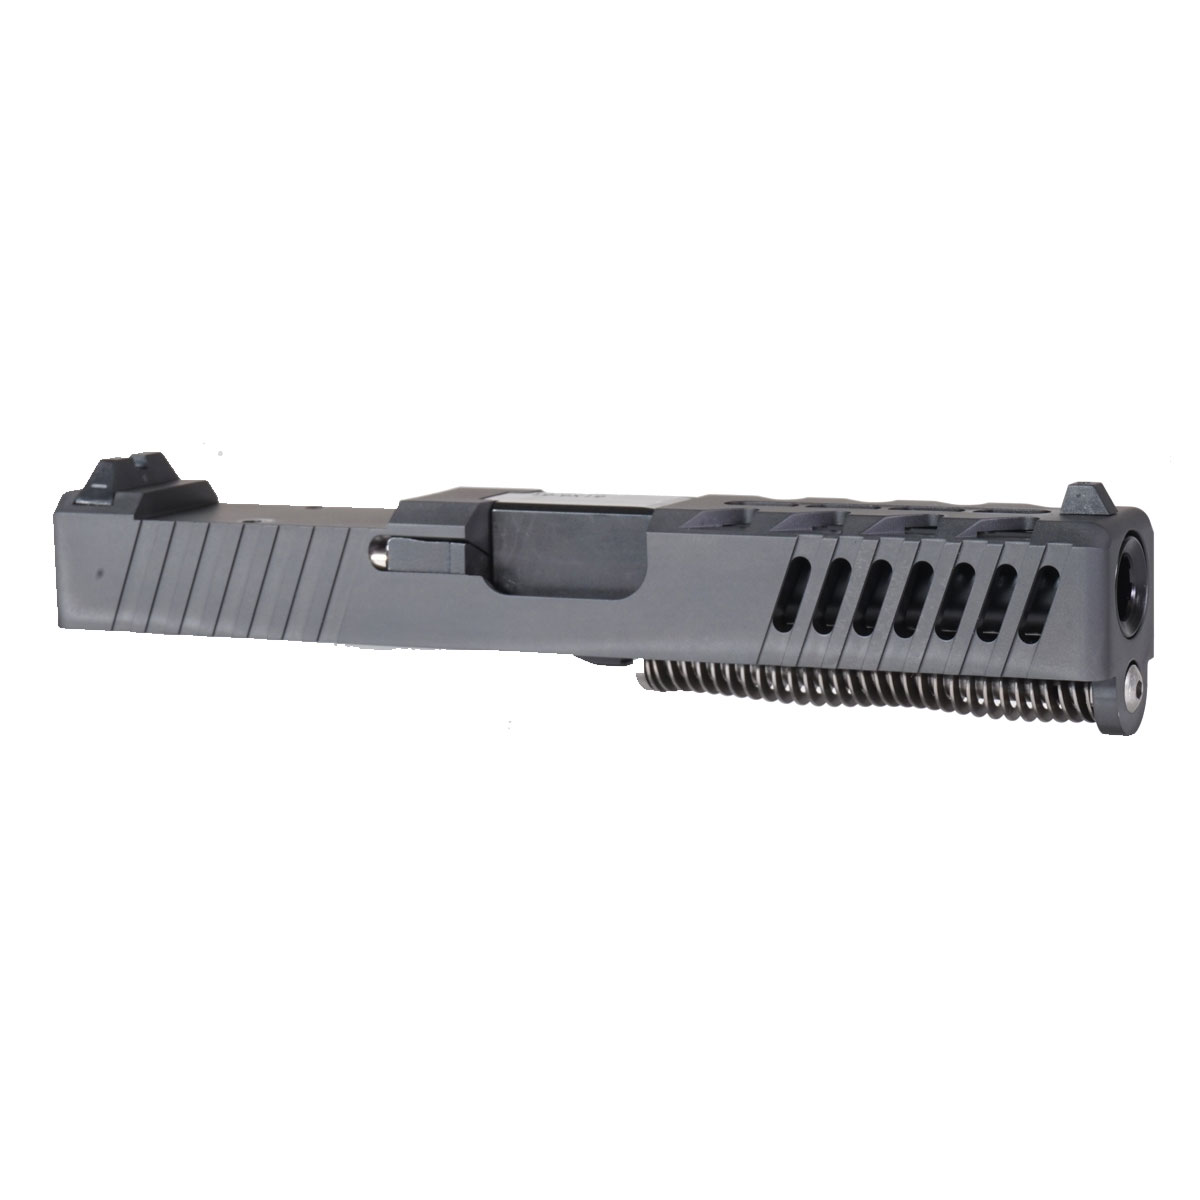 MMC 'The Rasmussen' 9mm Complete Slide Kit - Glock 19 Gen 1-3 Compatible